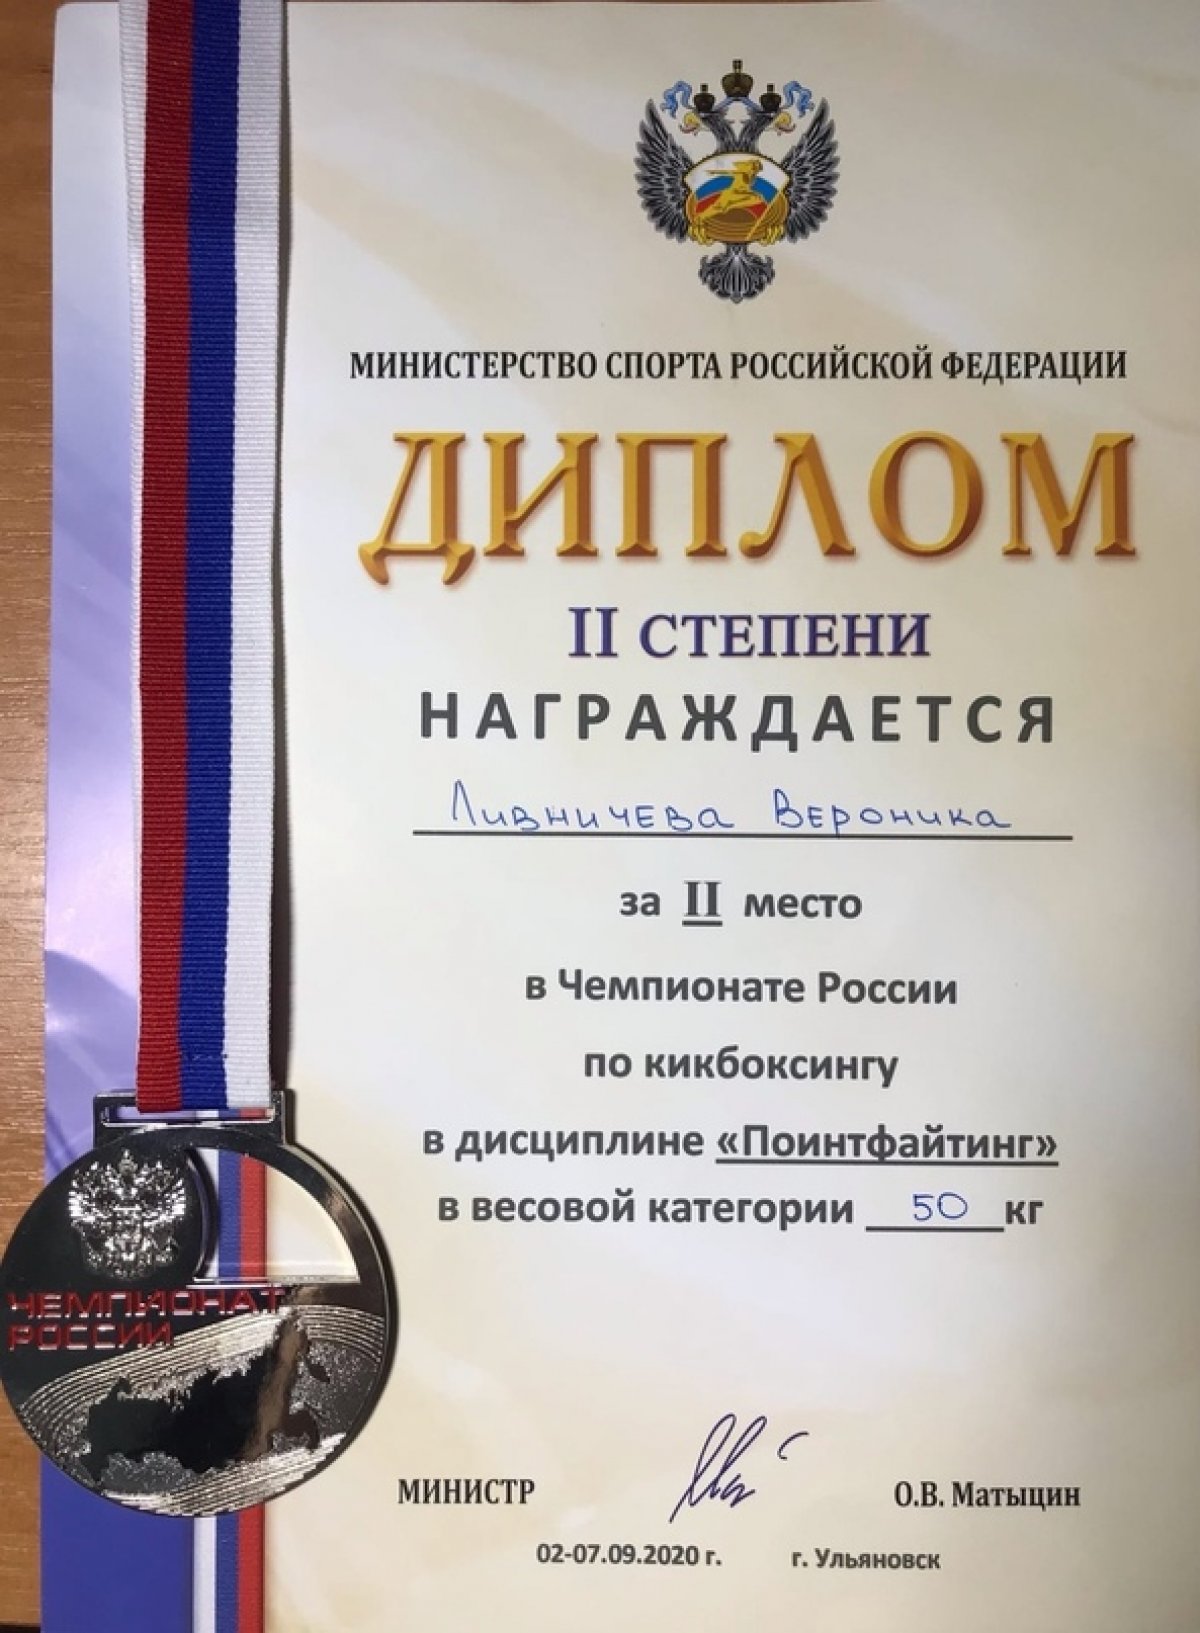 Новости из Ульяновска! Там завершился Чемпионат России по кикбоксингу!🙃